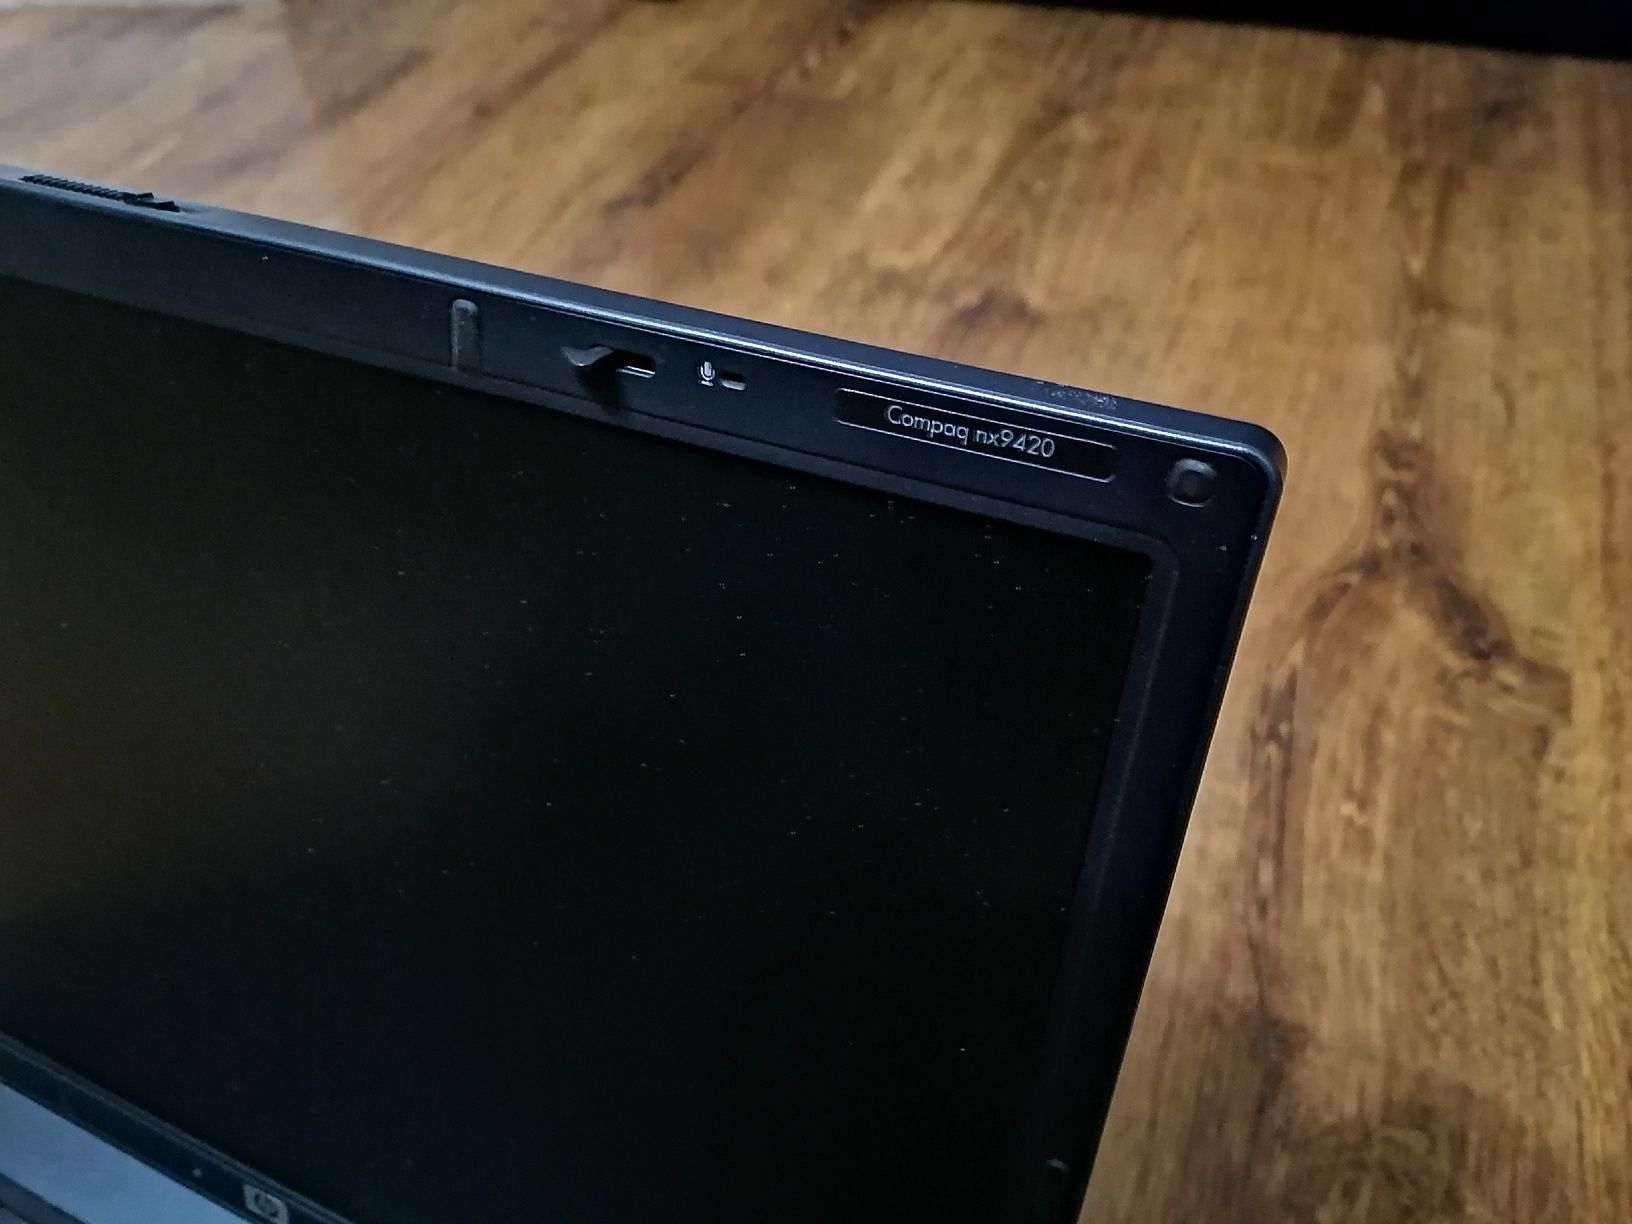 Laptop HP compaq nx9420 uszkodzony na części